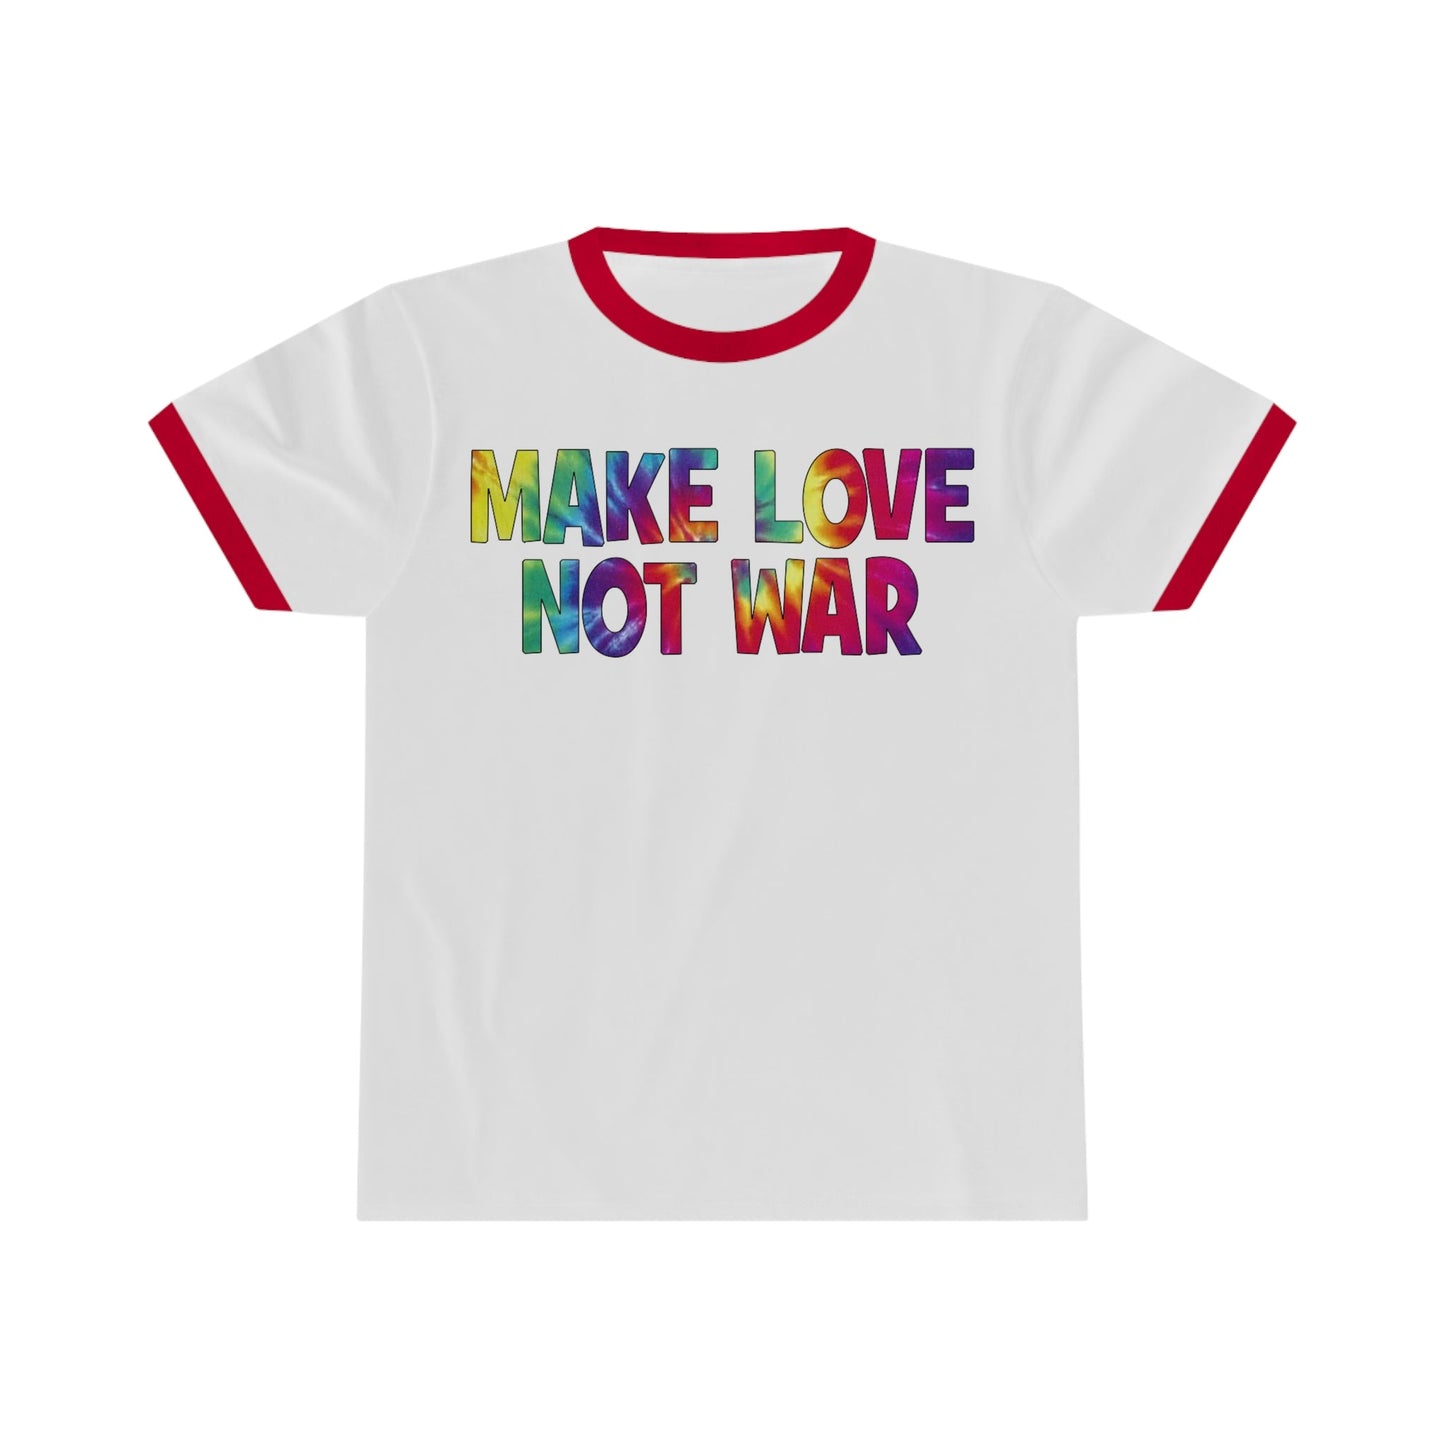 Make Love Not War Ringer Tee